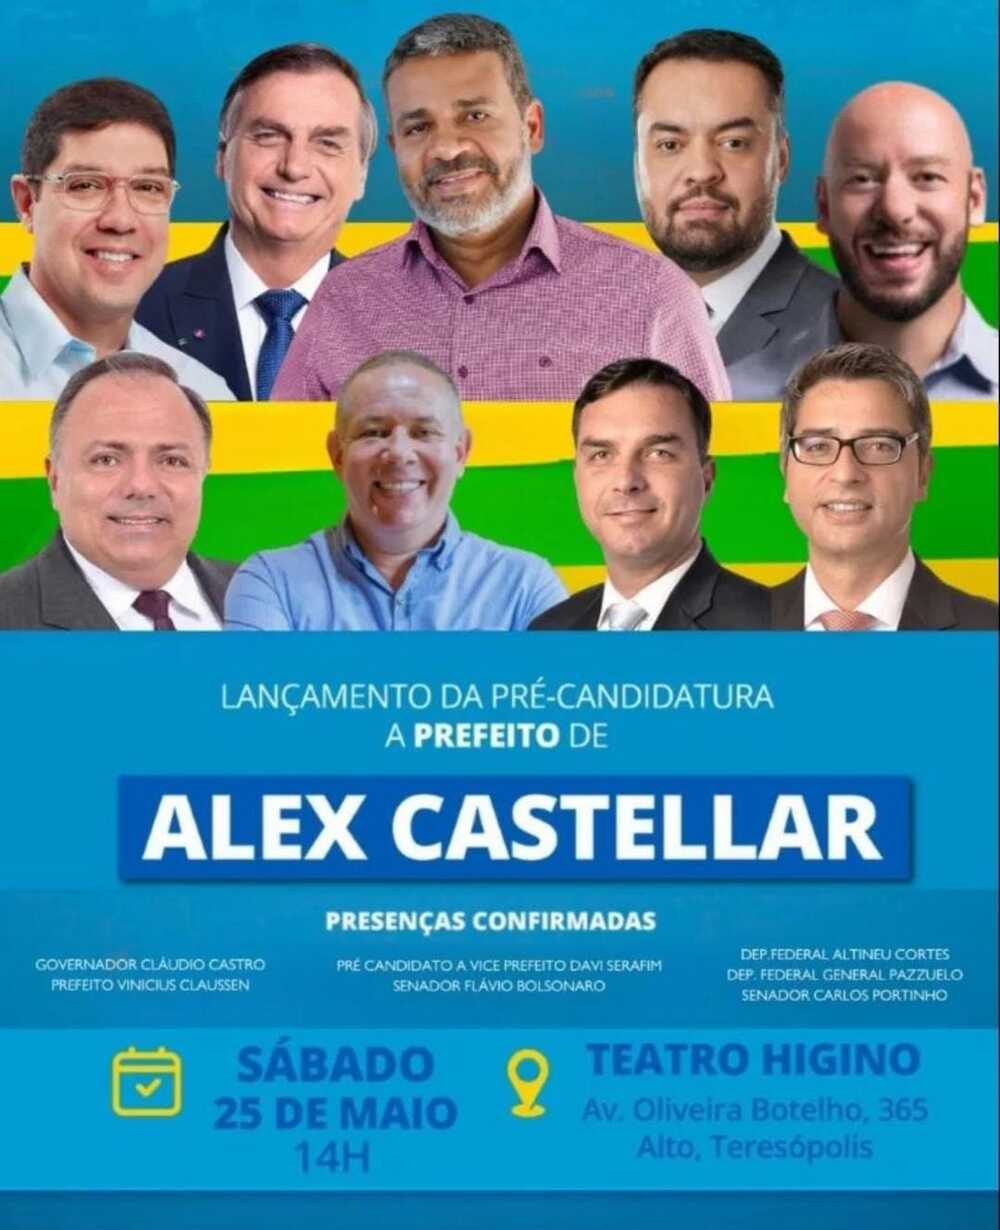 Alex Castellar confirma pré-candidatura à prefeitura de Teresópolis neste sábado, 25 de maio, às 14h, no Teatro Higino